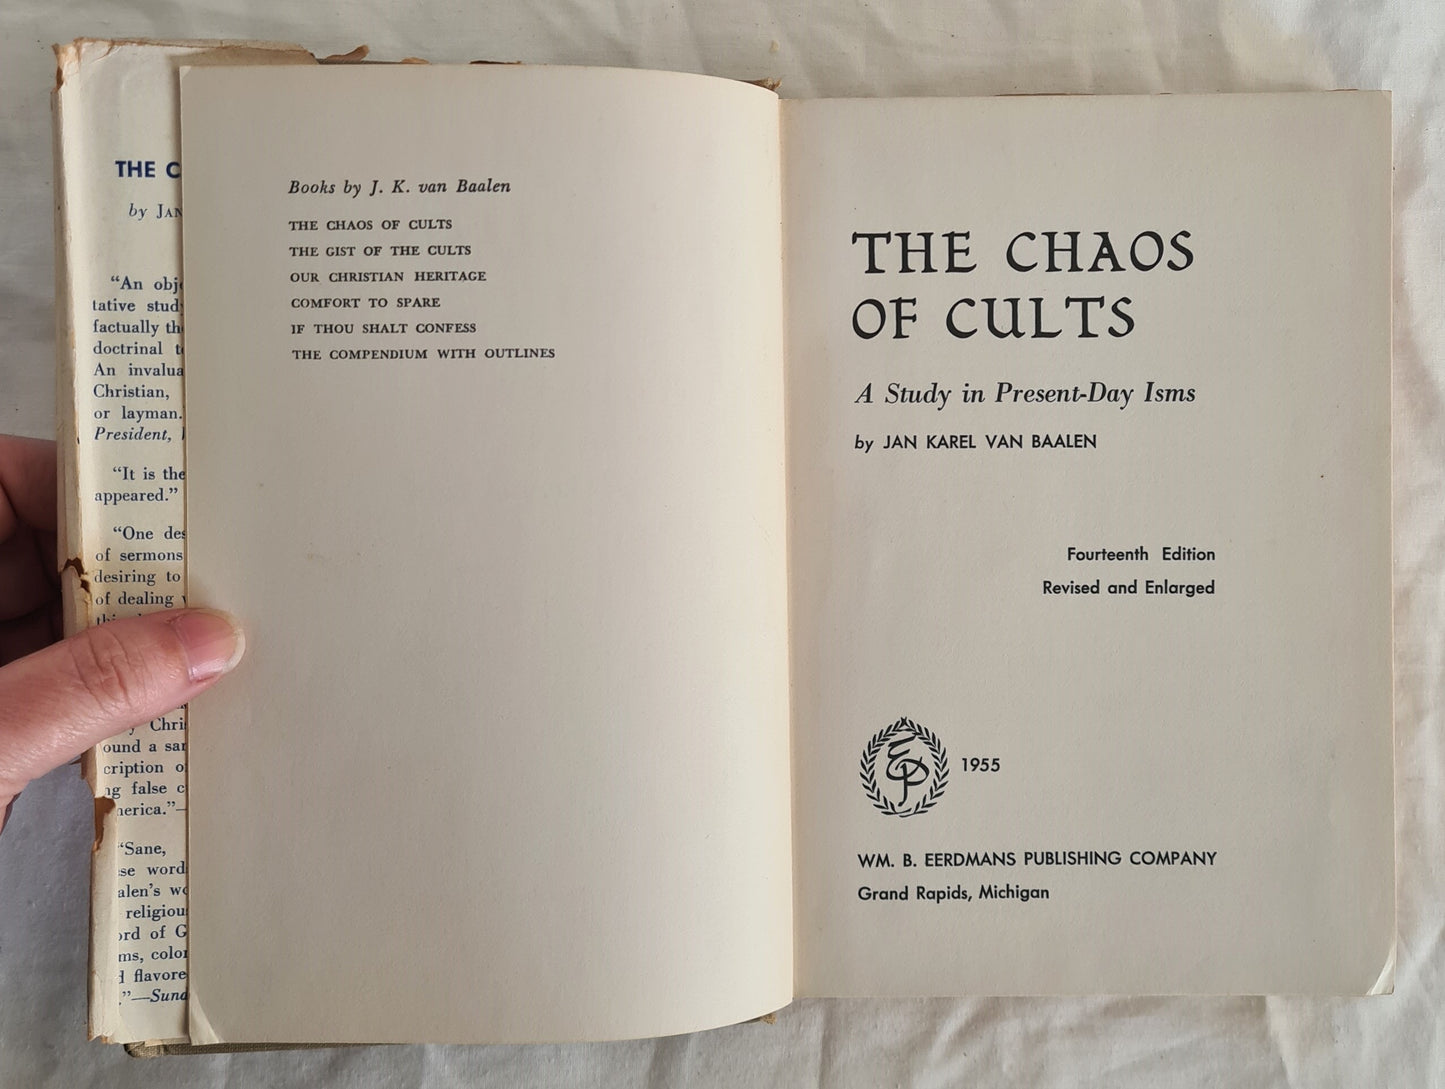 The Chaos of Cults by Jan Karel Van Baalen